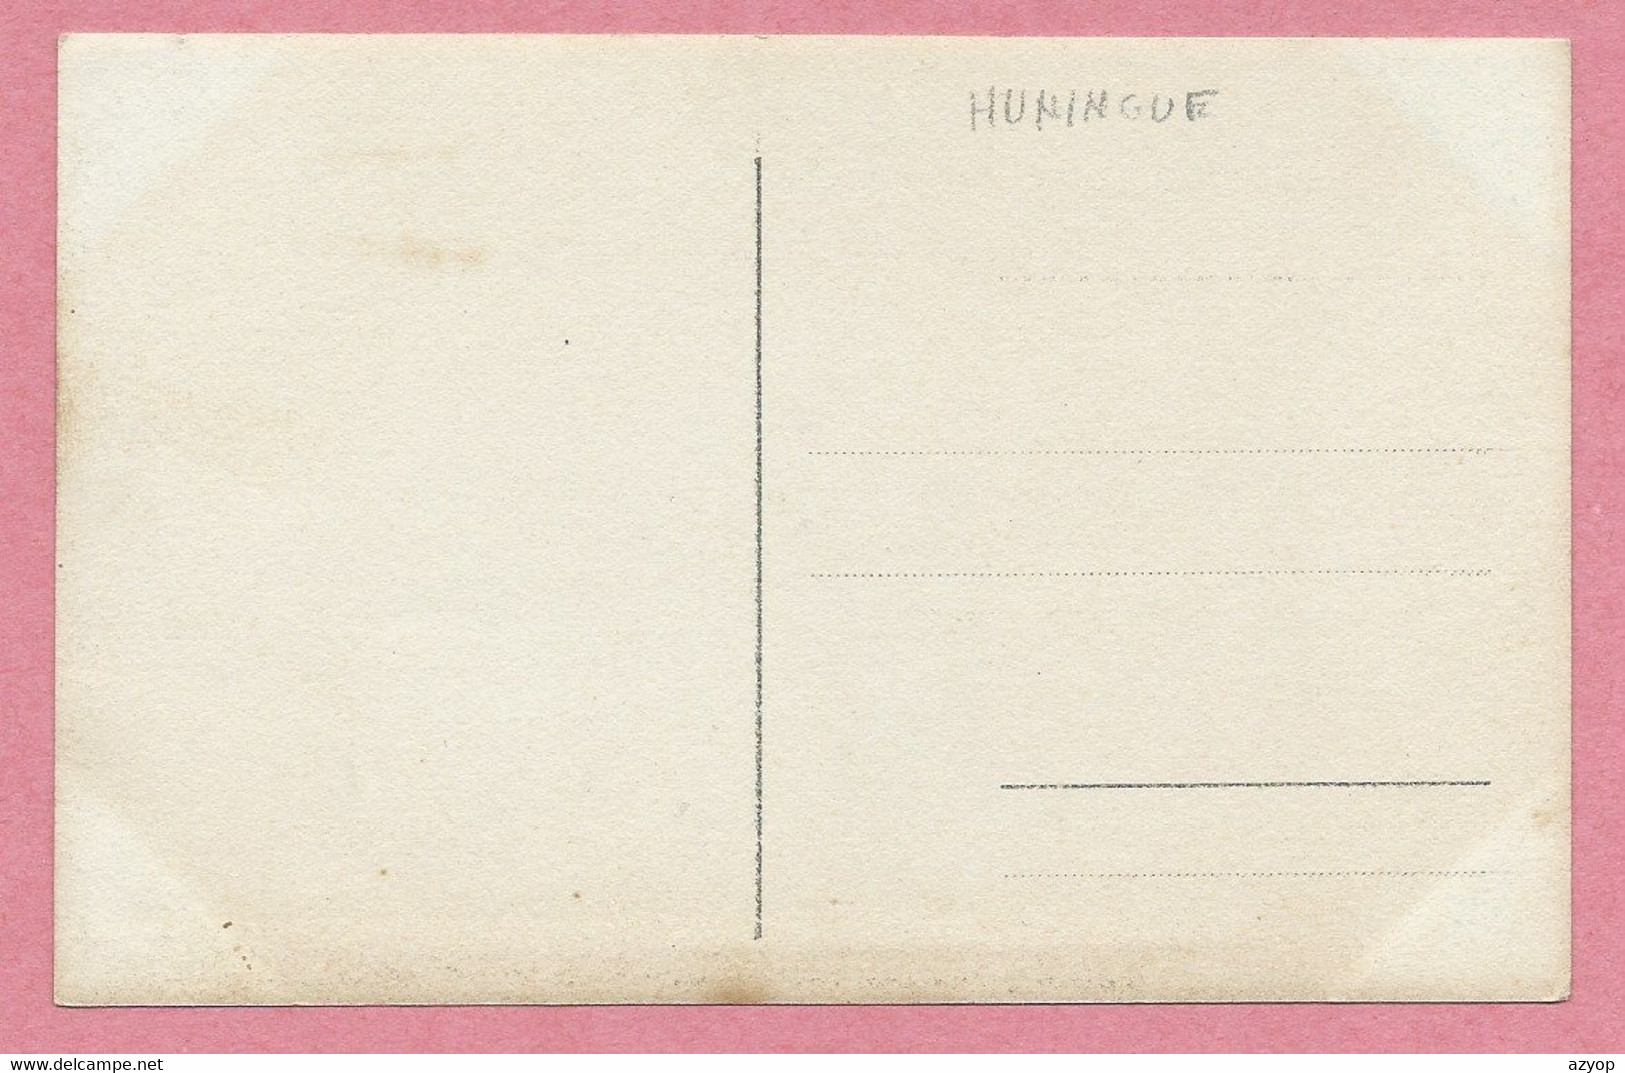 68 - HÜNIGEN - HUNINGUE - Carte Photo - Männerchor GROSSHÜNINGEN 1908 - Huningue